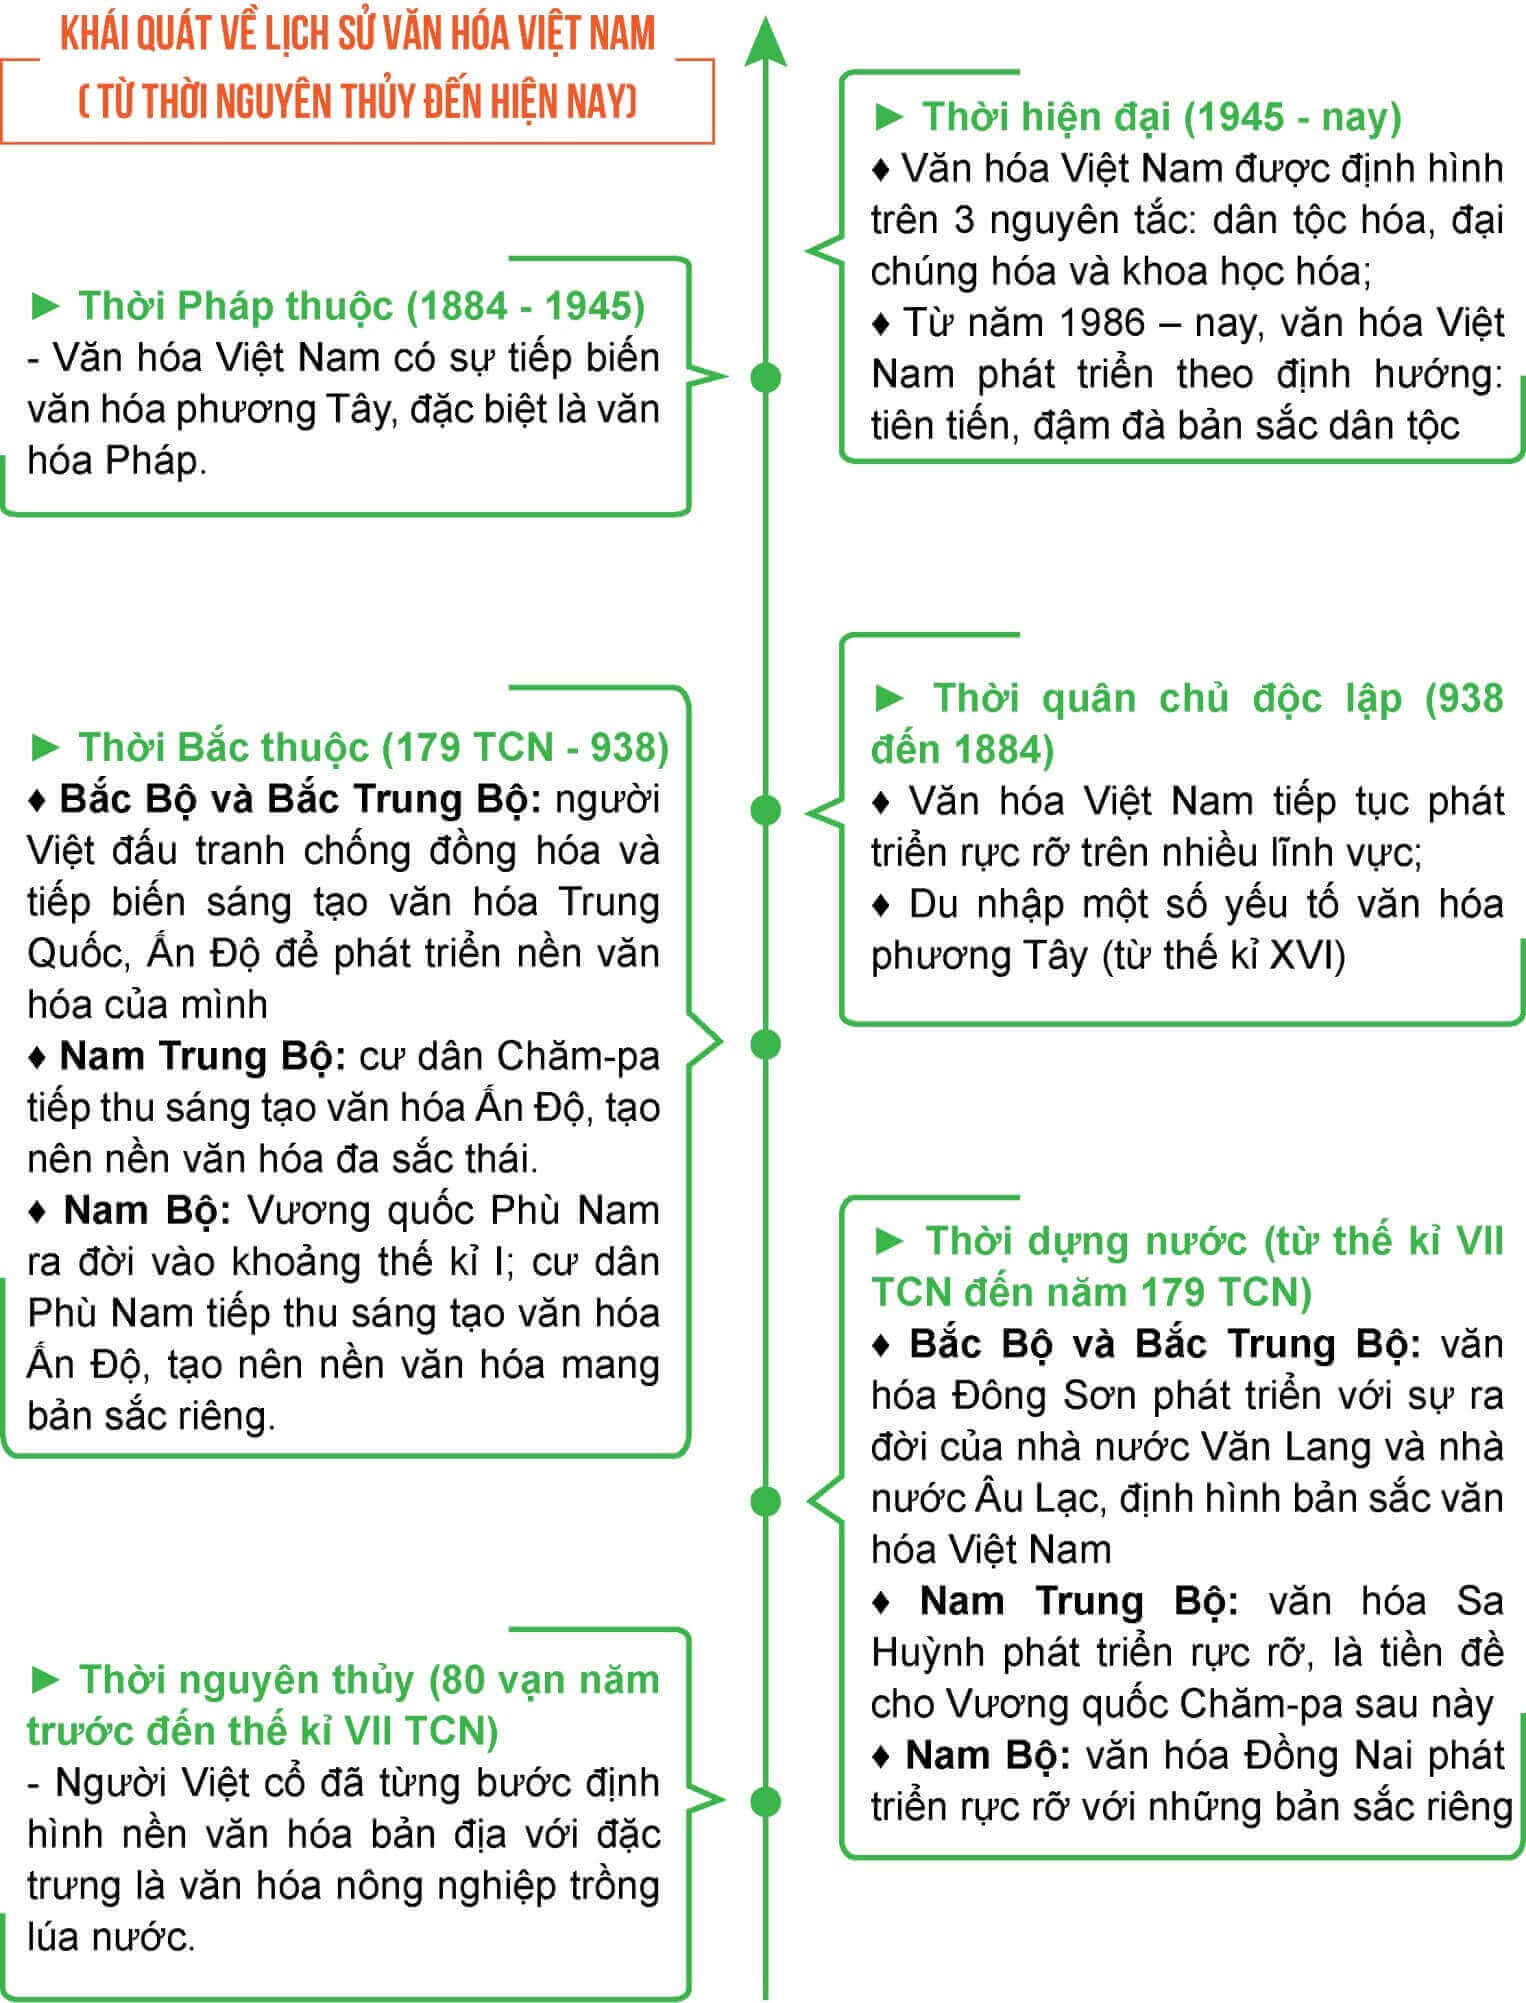 Tóm tắt những nét chính của lịch sử tư tưởng Việt Nam trên trục thời gian